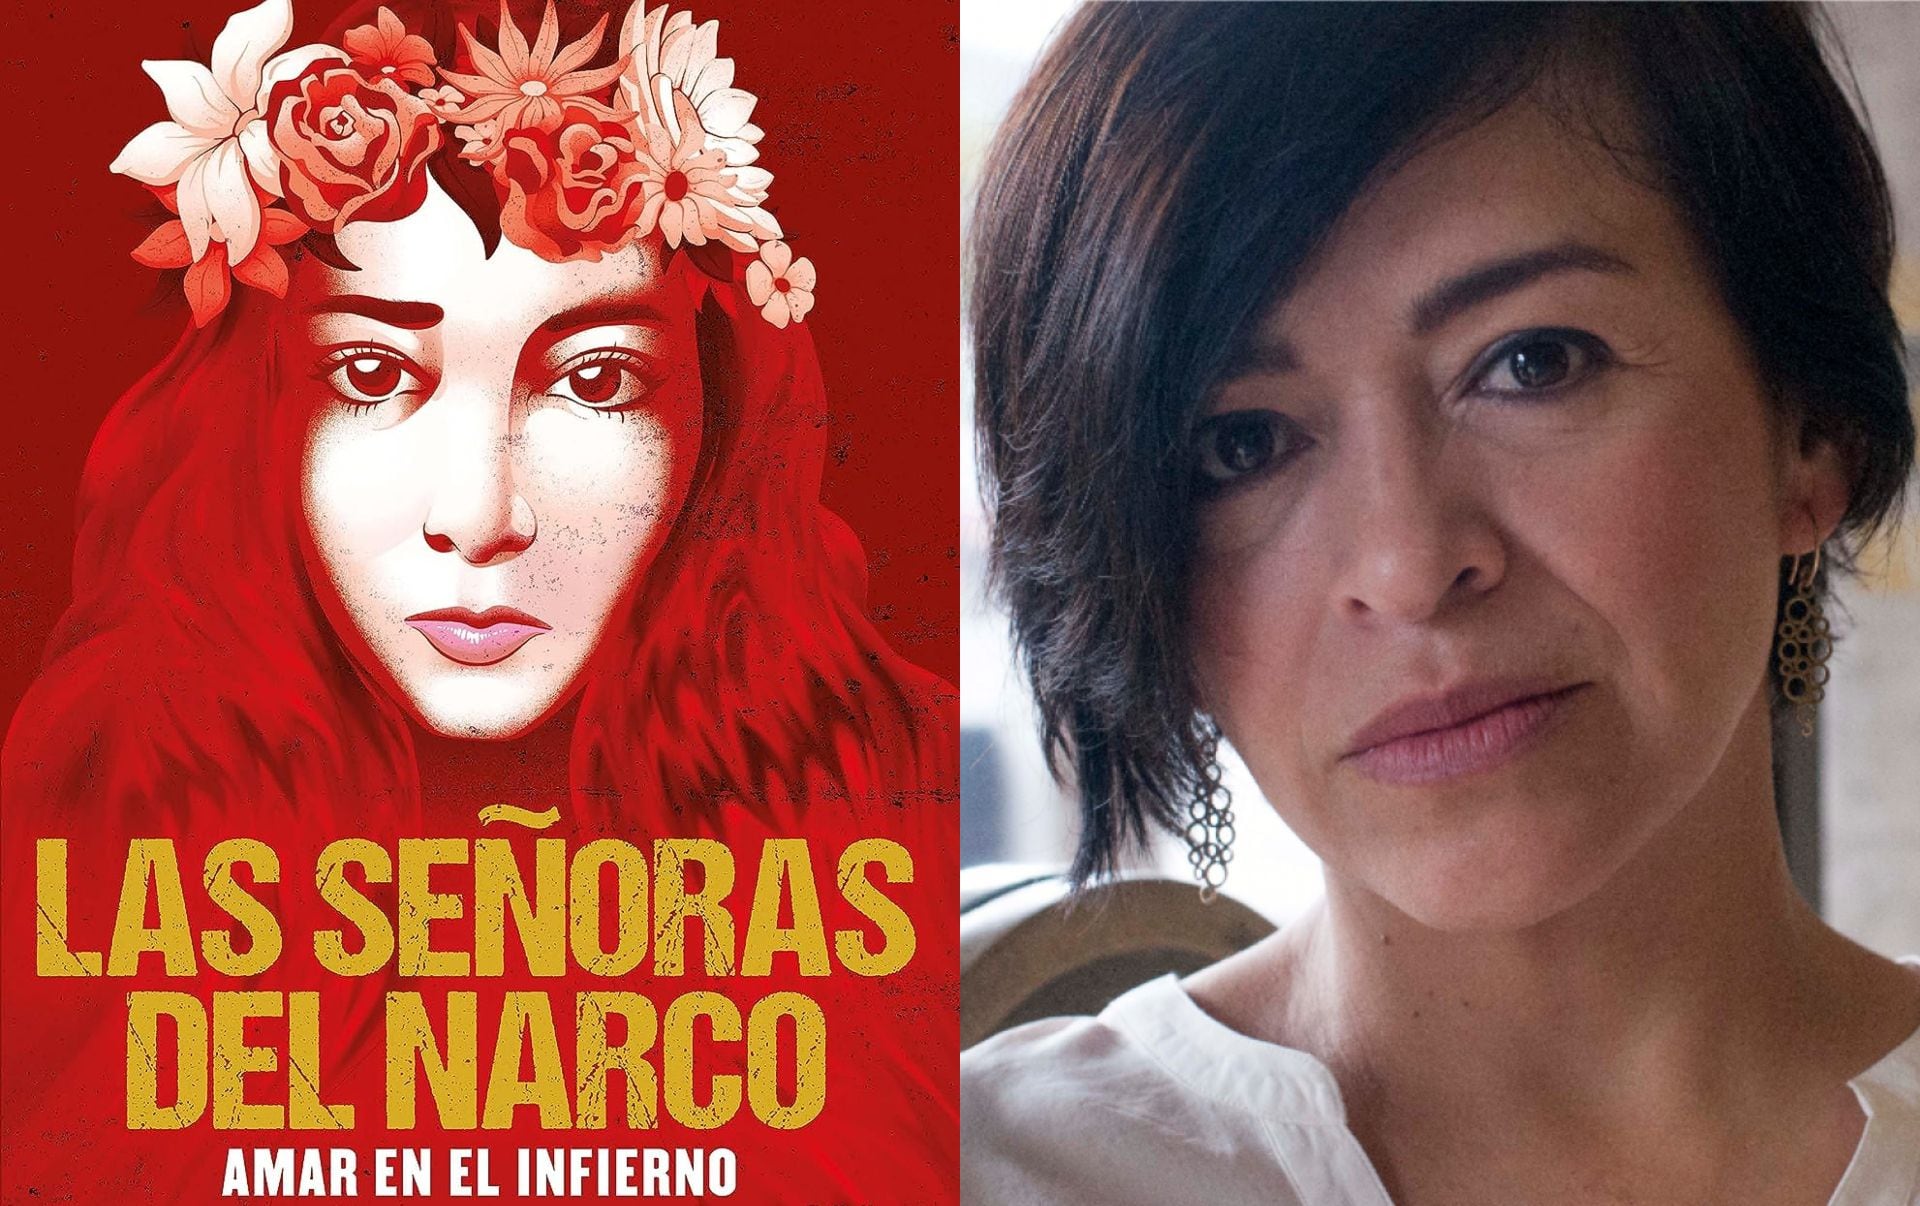 Anabel Hernández lanzará su libro las señoras del narco aman el infierno (Amazon/Archivo)